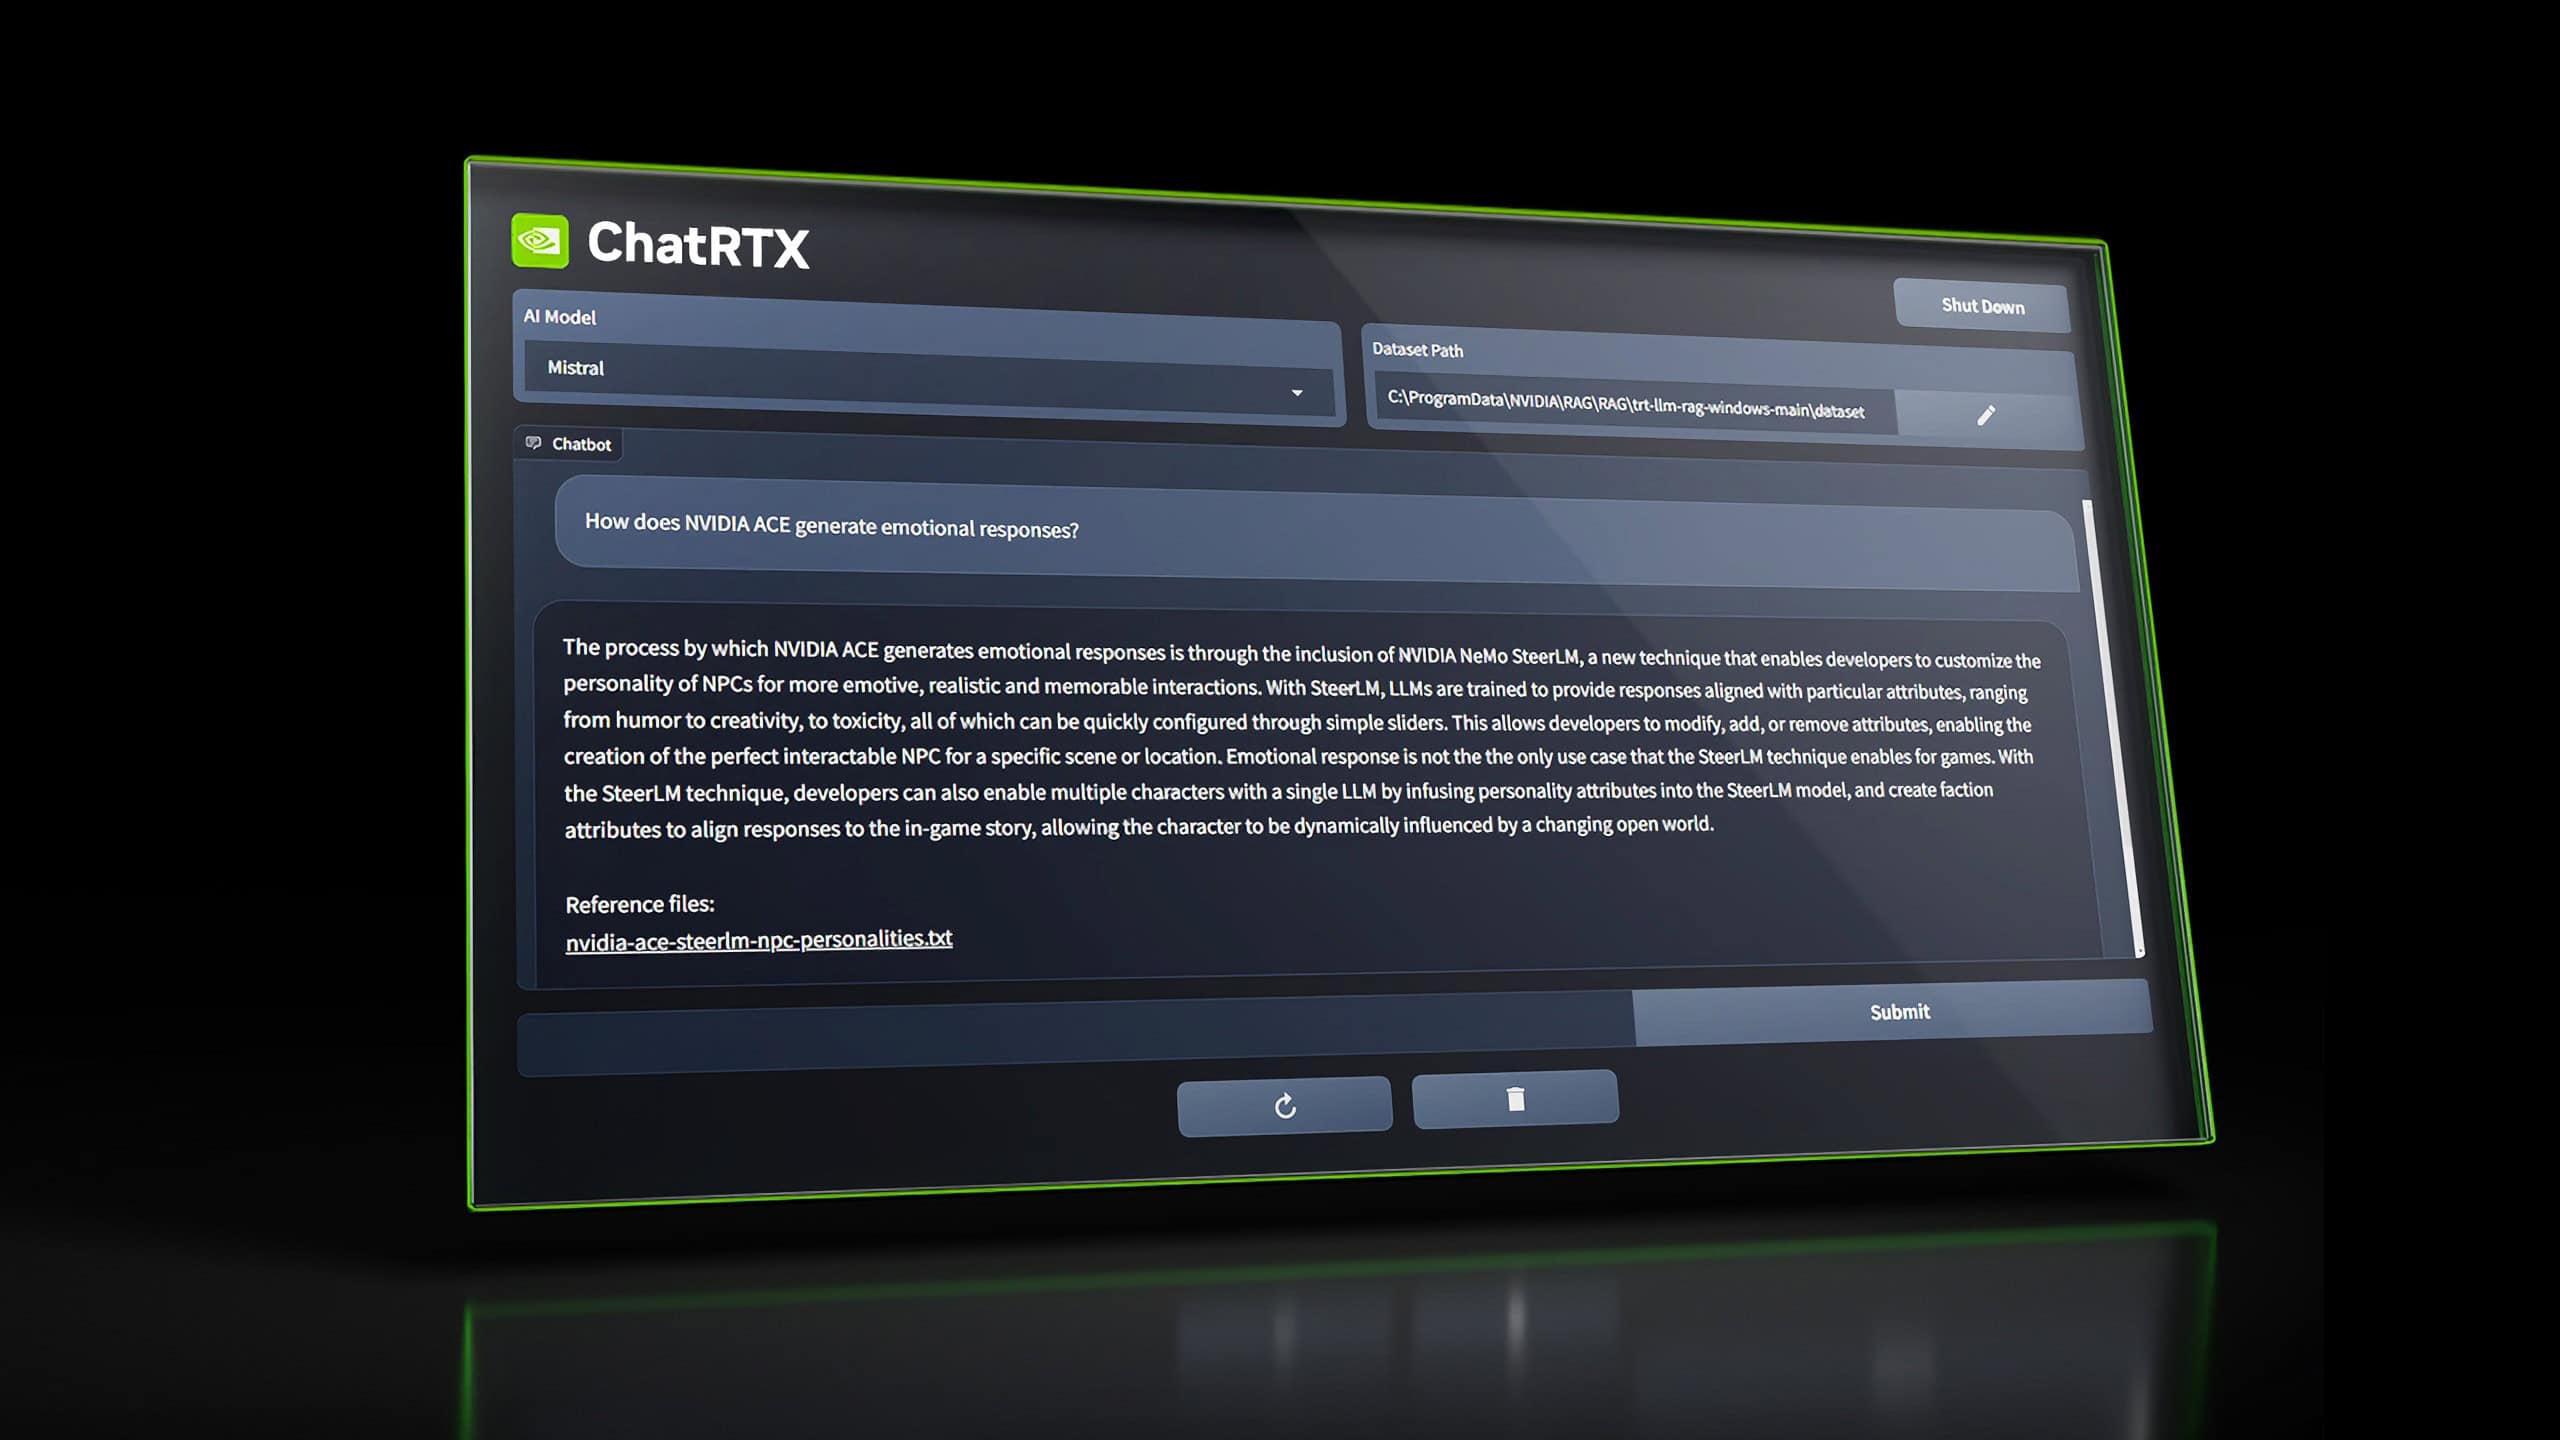 NVIDIA、画像検索、音声認識機能などを追加したローカルAIチャットボットアプリ「ChatRTX」をリリース